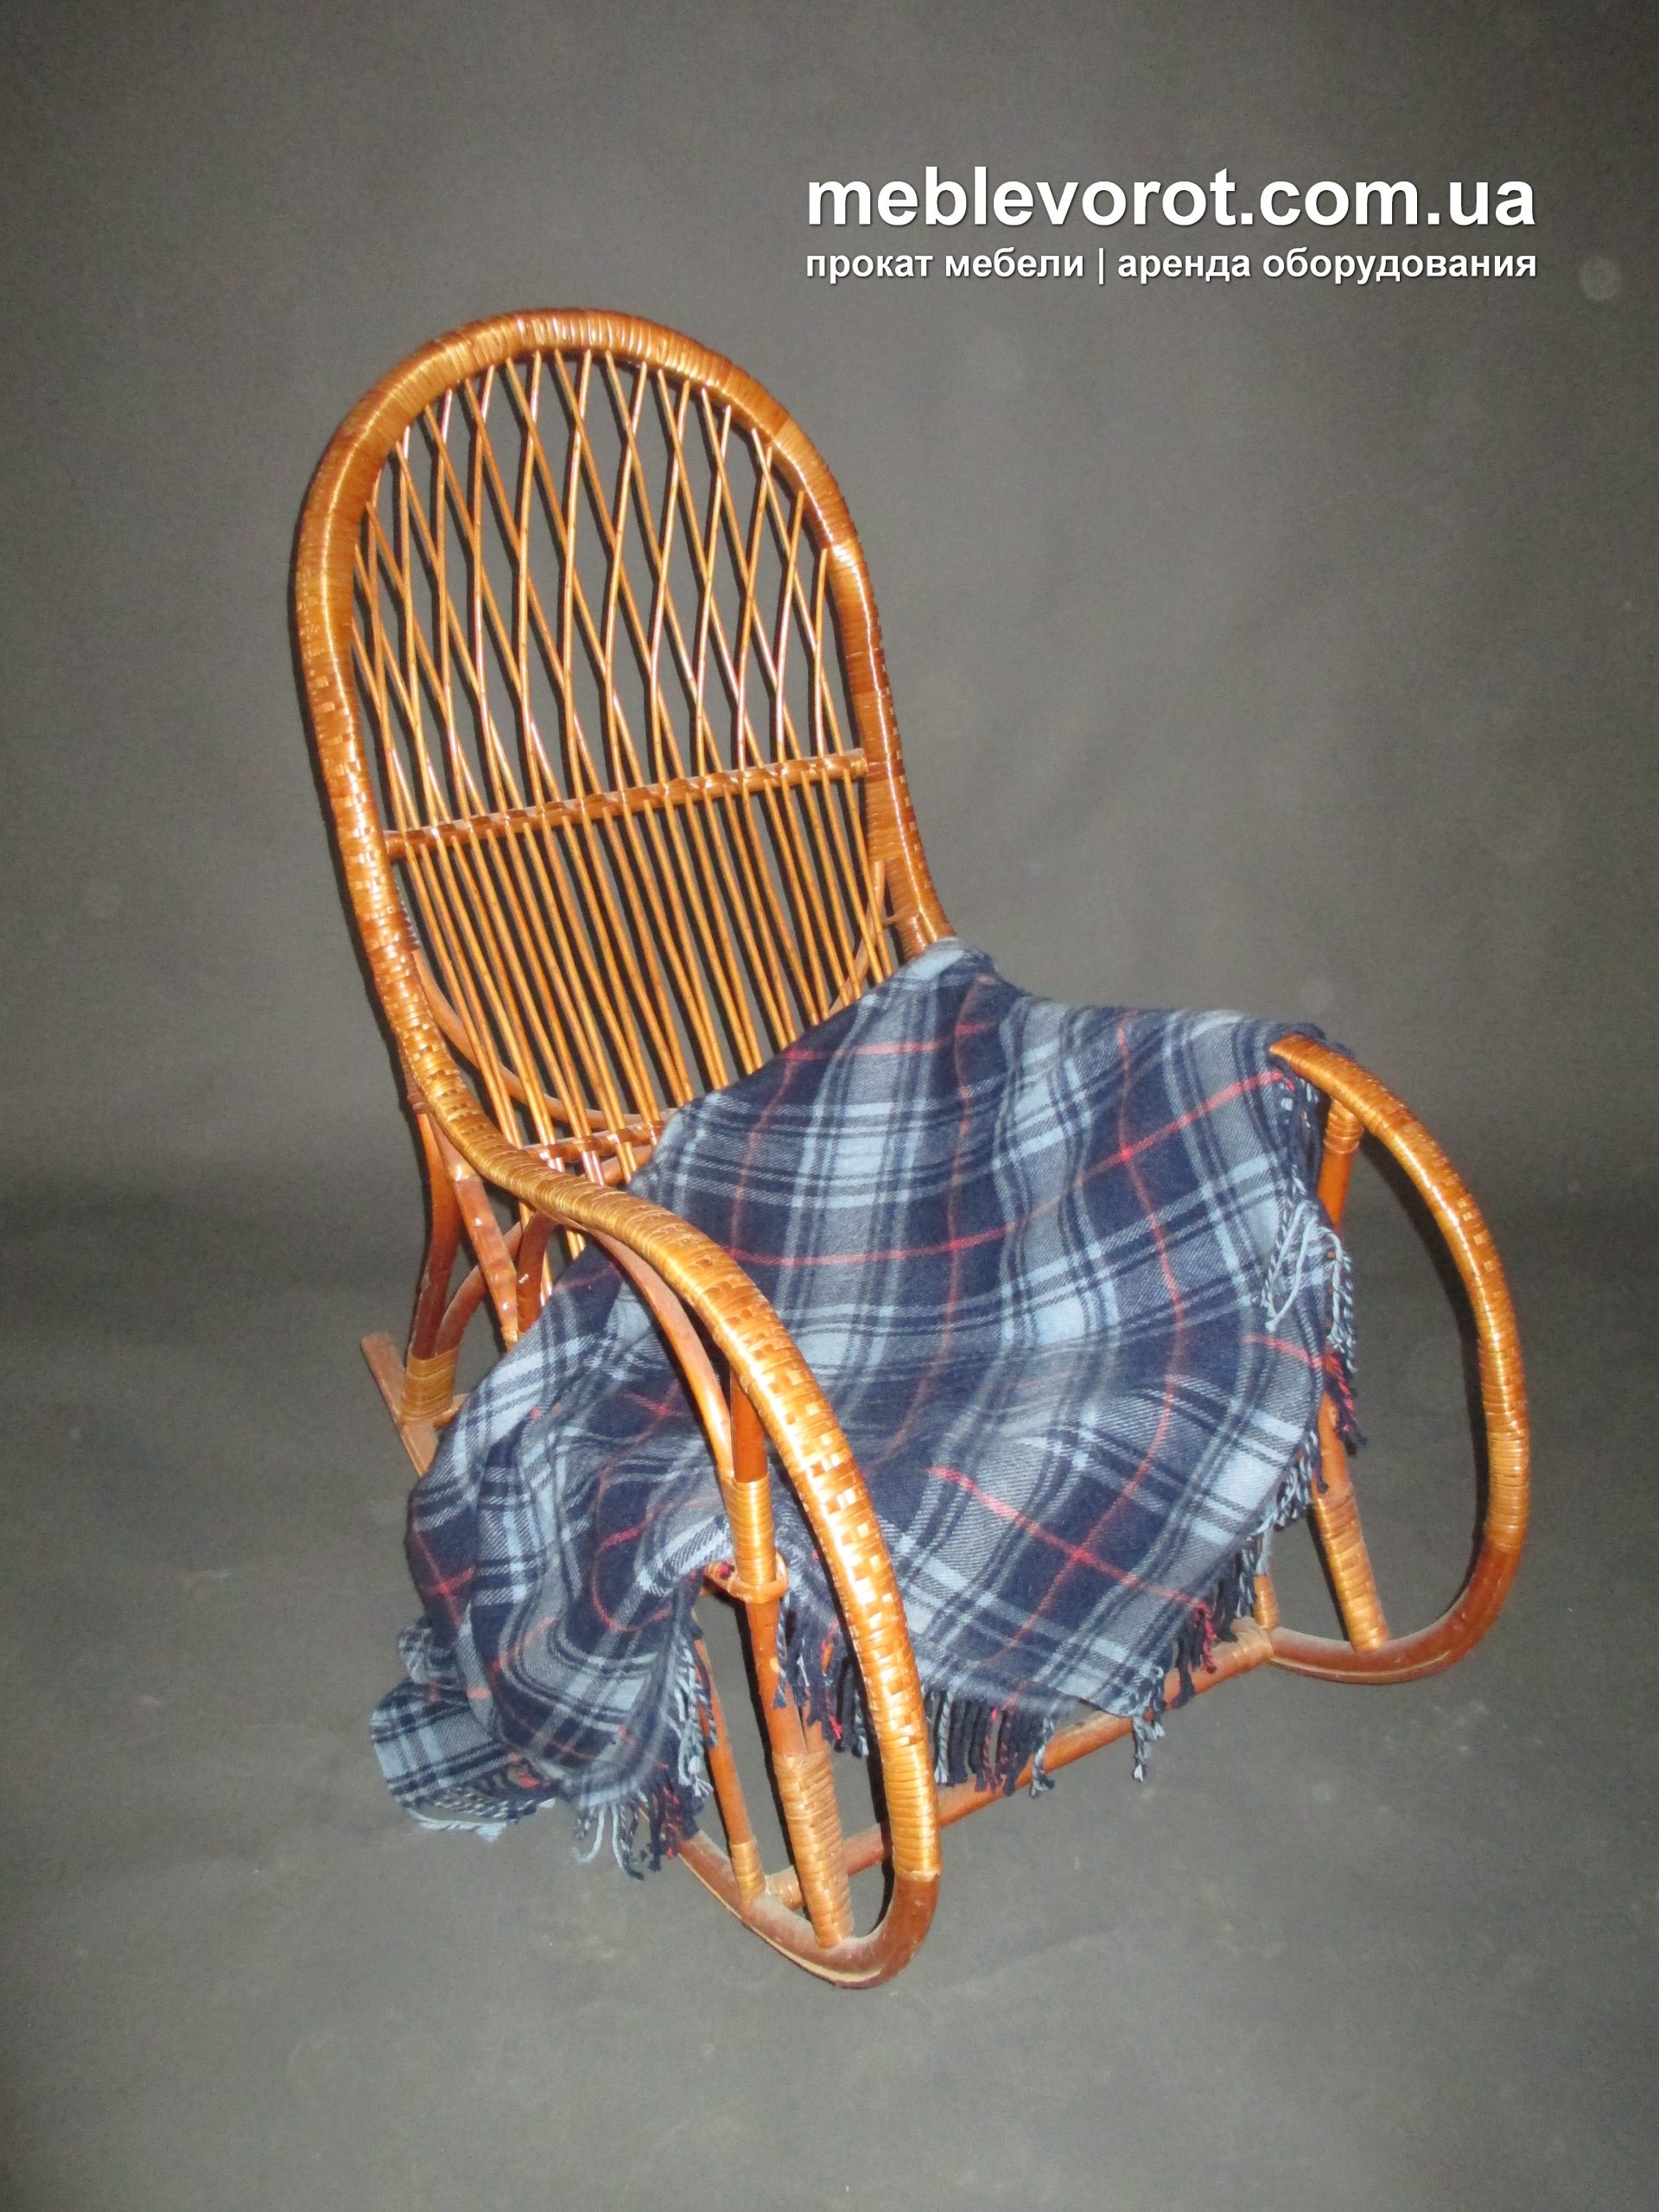 Кресло качалка из паллетов